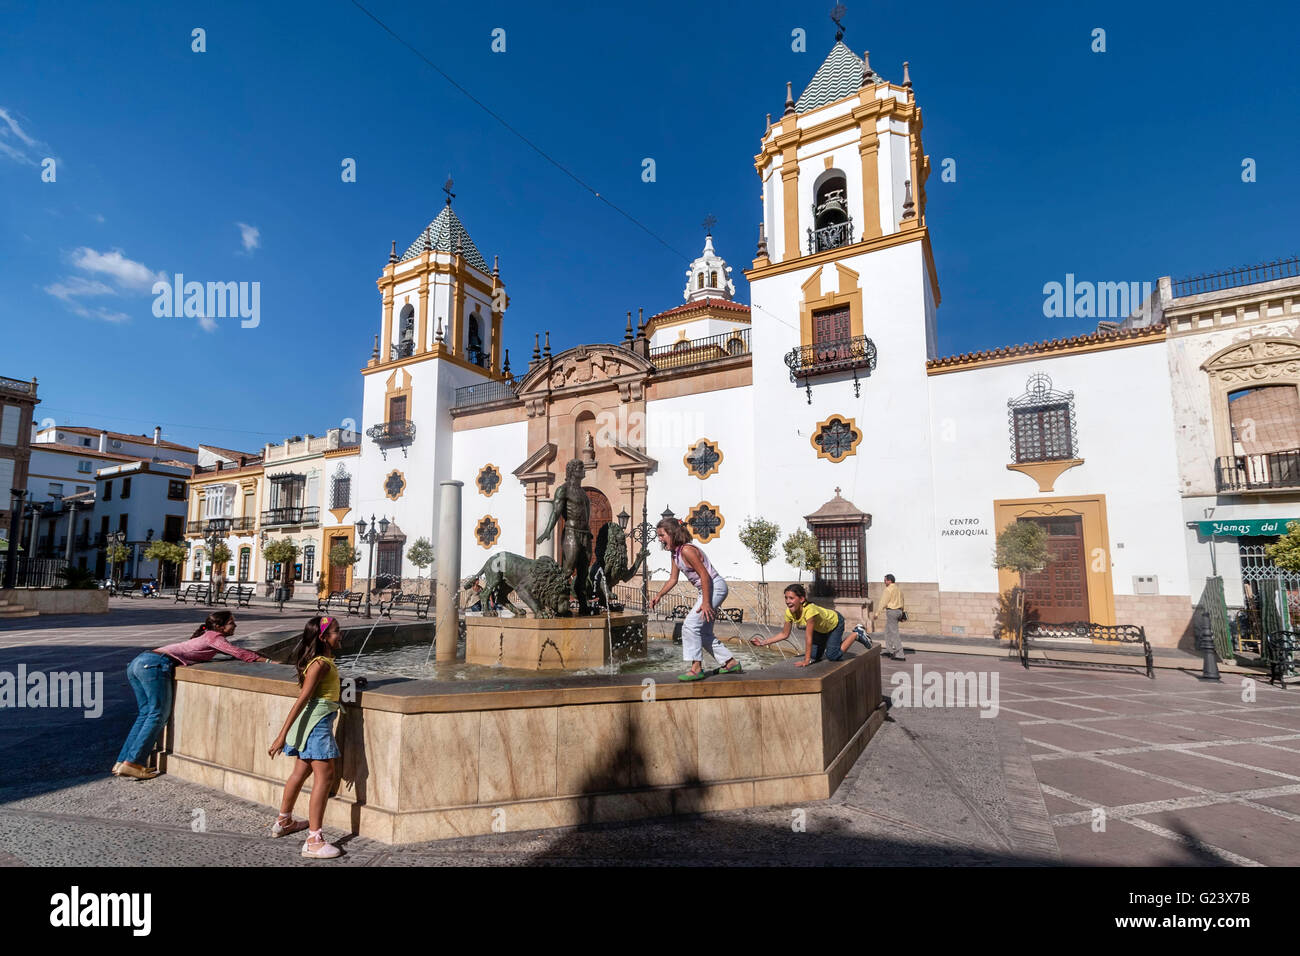 Plaza del Socorro , Ronda, Andalusia, Spain Stock Photo